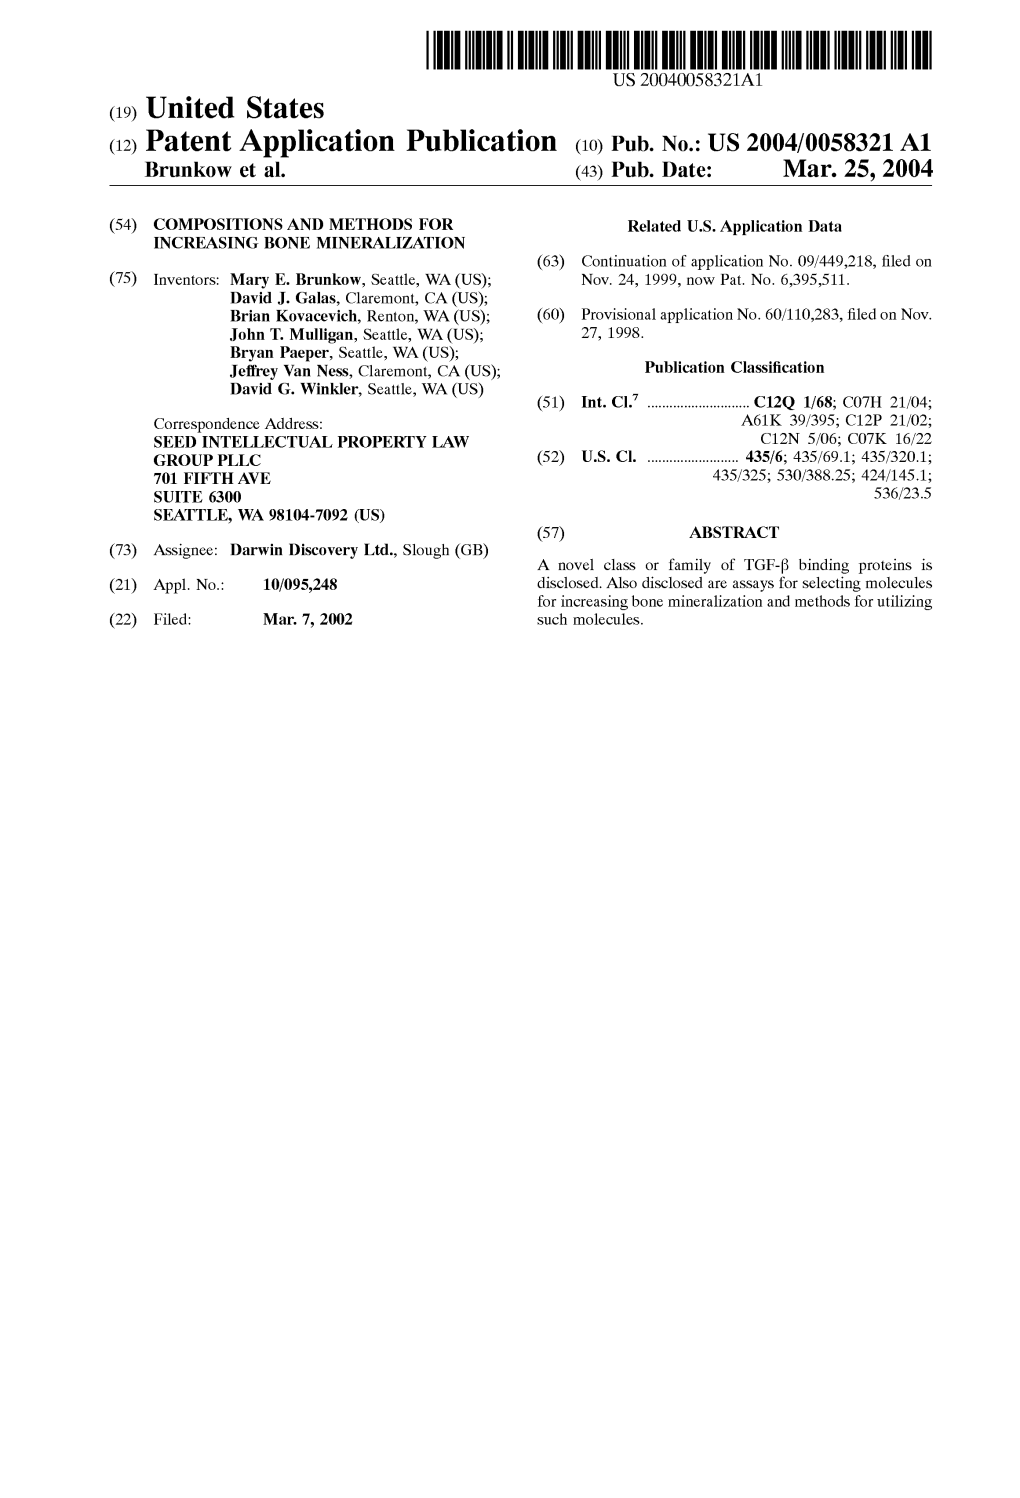 (12) Patent Application Publication (10) Pub. No.: US 2004/0058321 A1 Brunkow Et Al